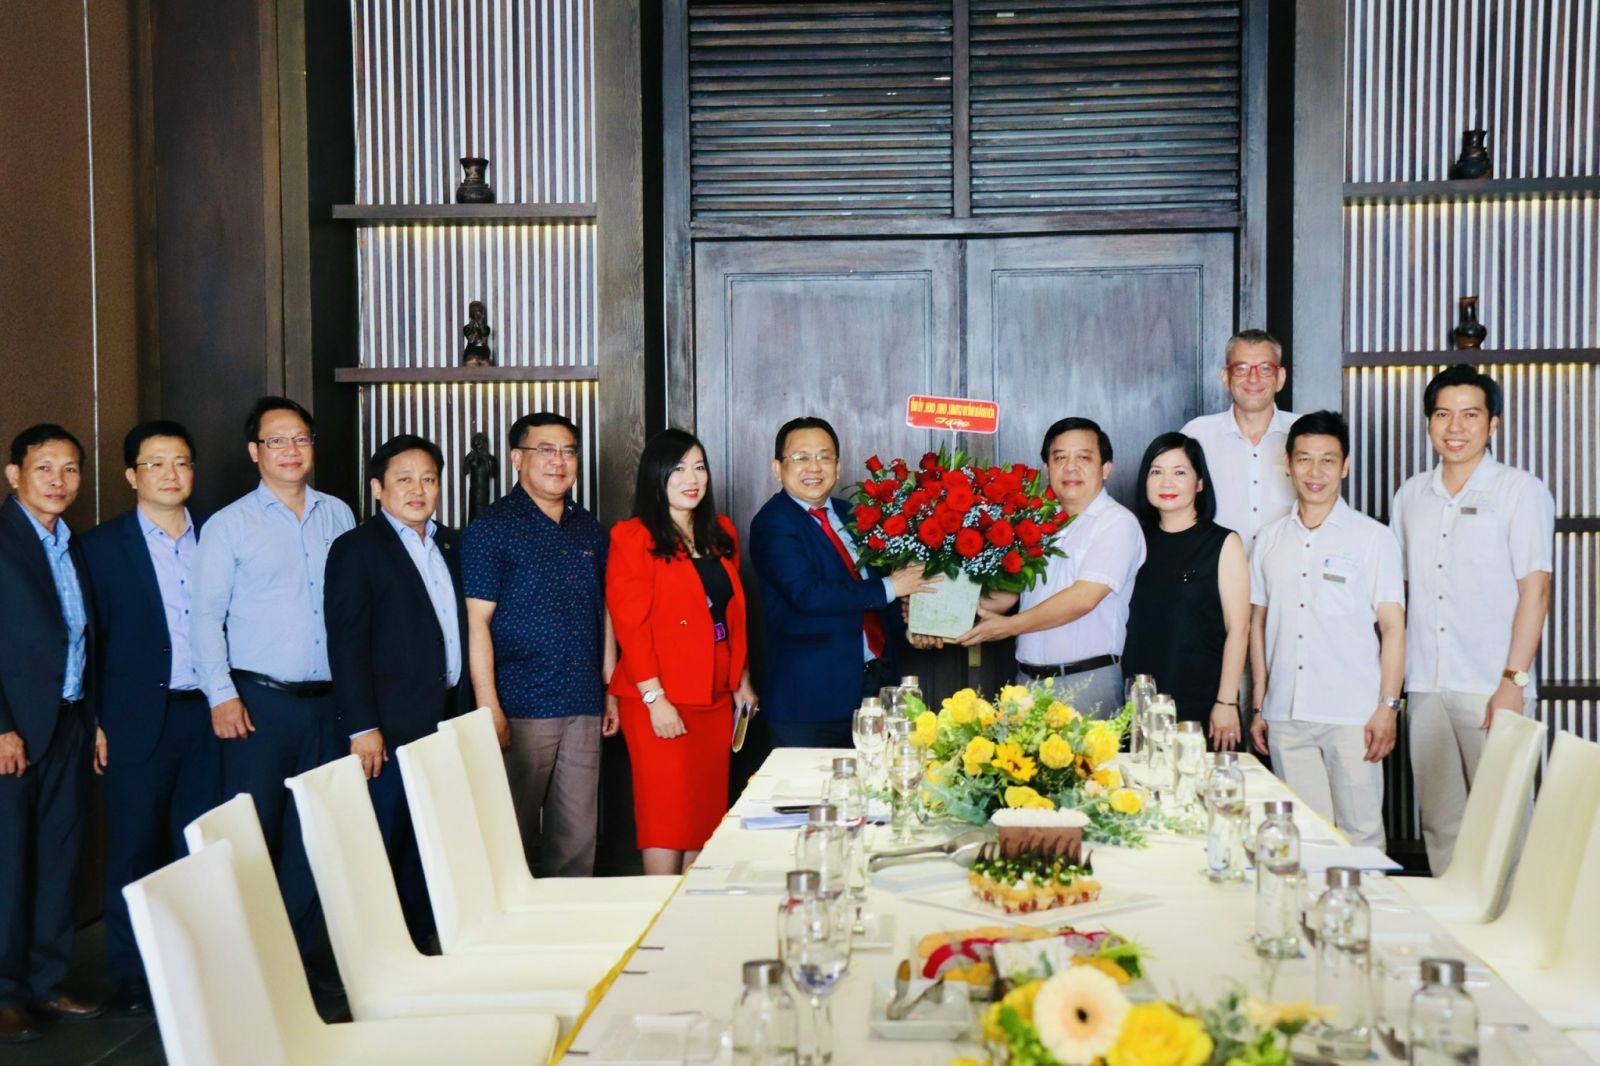 Руководители Народного комитета провинции Кханьхоа посещают туристический бизнес и желают праздника Вьетнамского Нового года Тет в начале 2022 года.